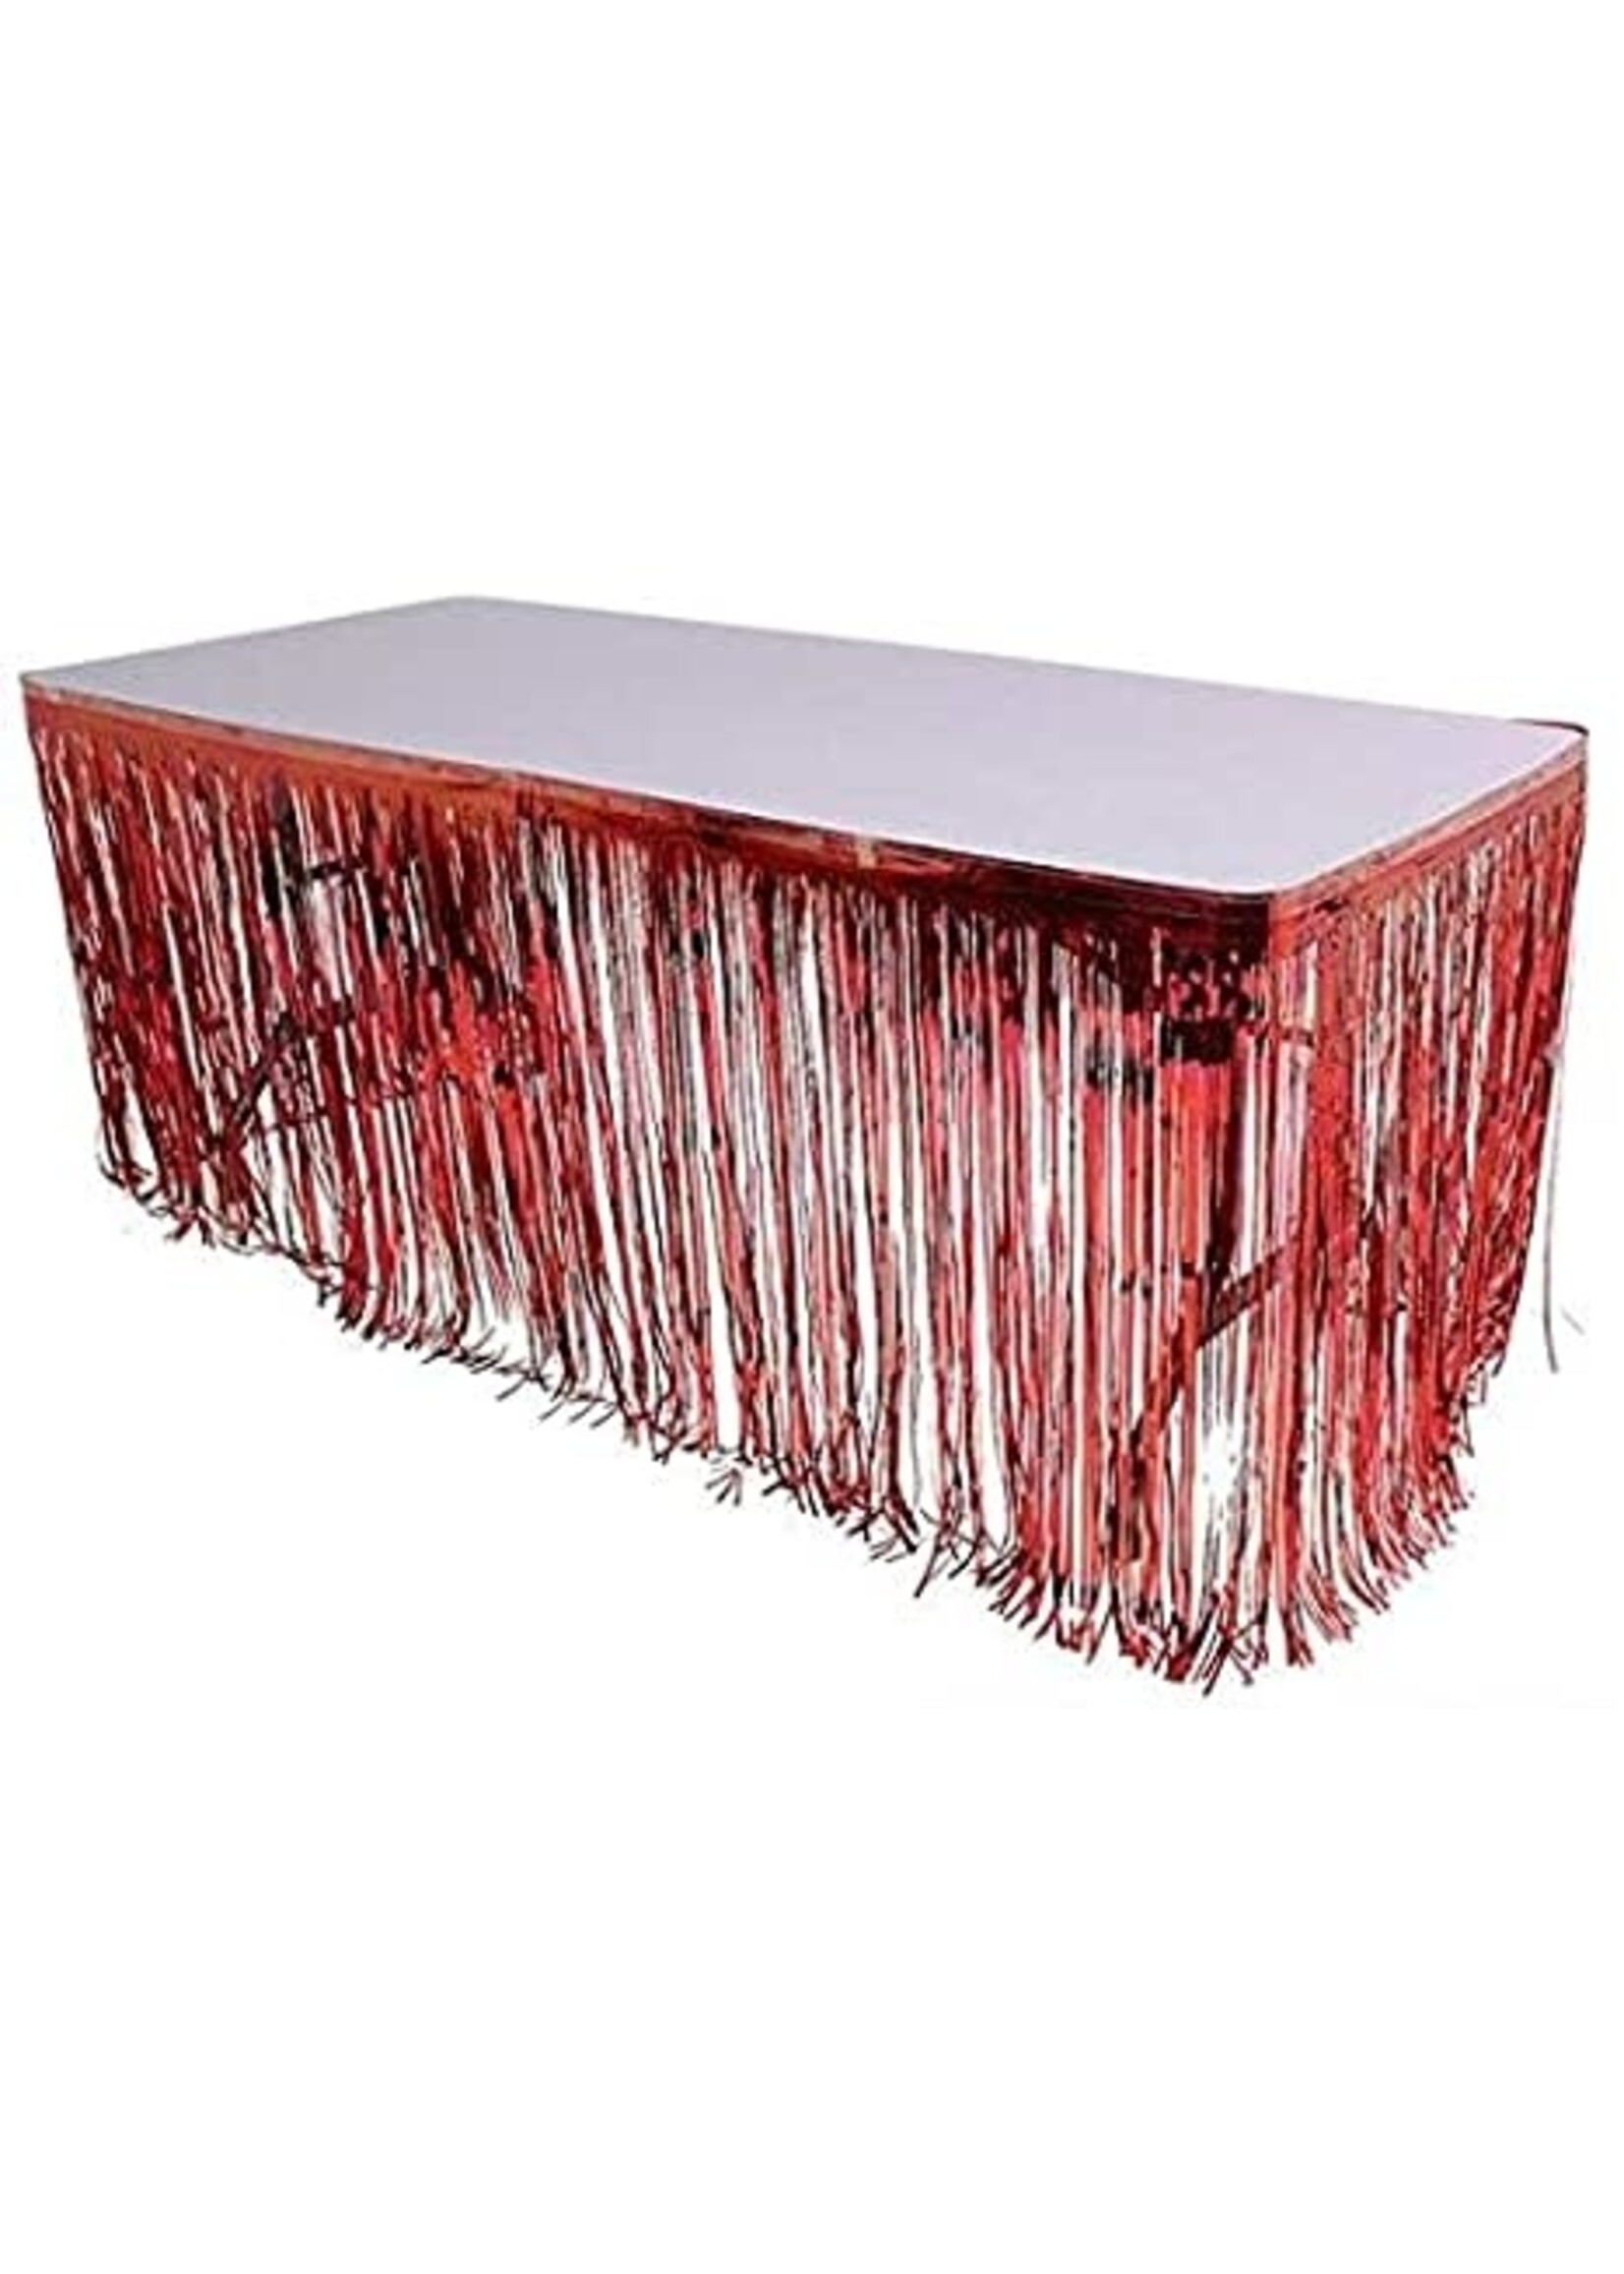 RED FOIL FRINGE TABLE SKIRT